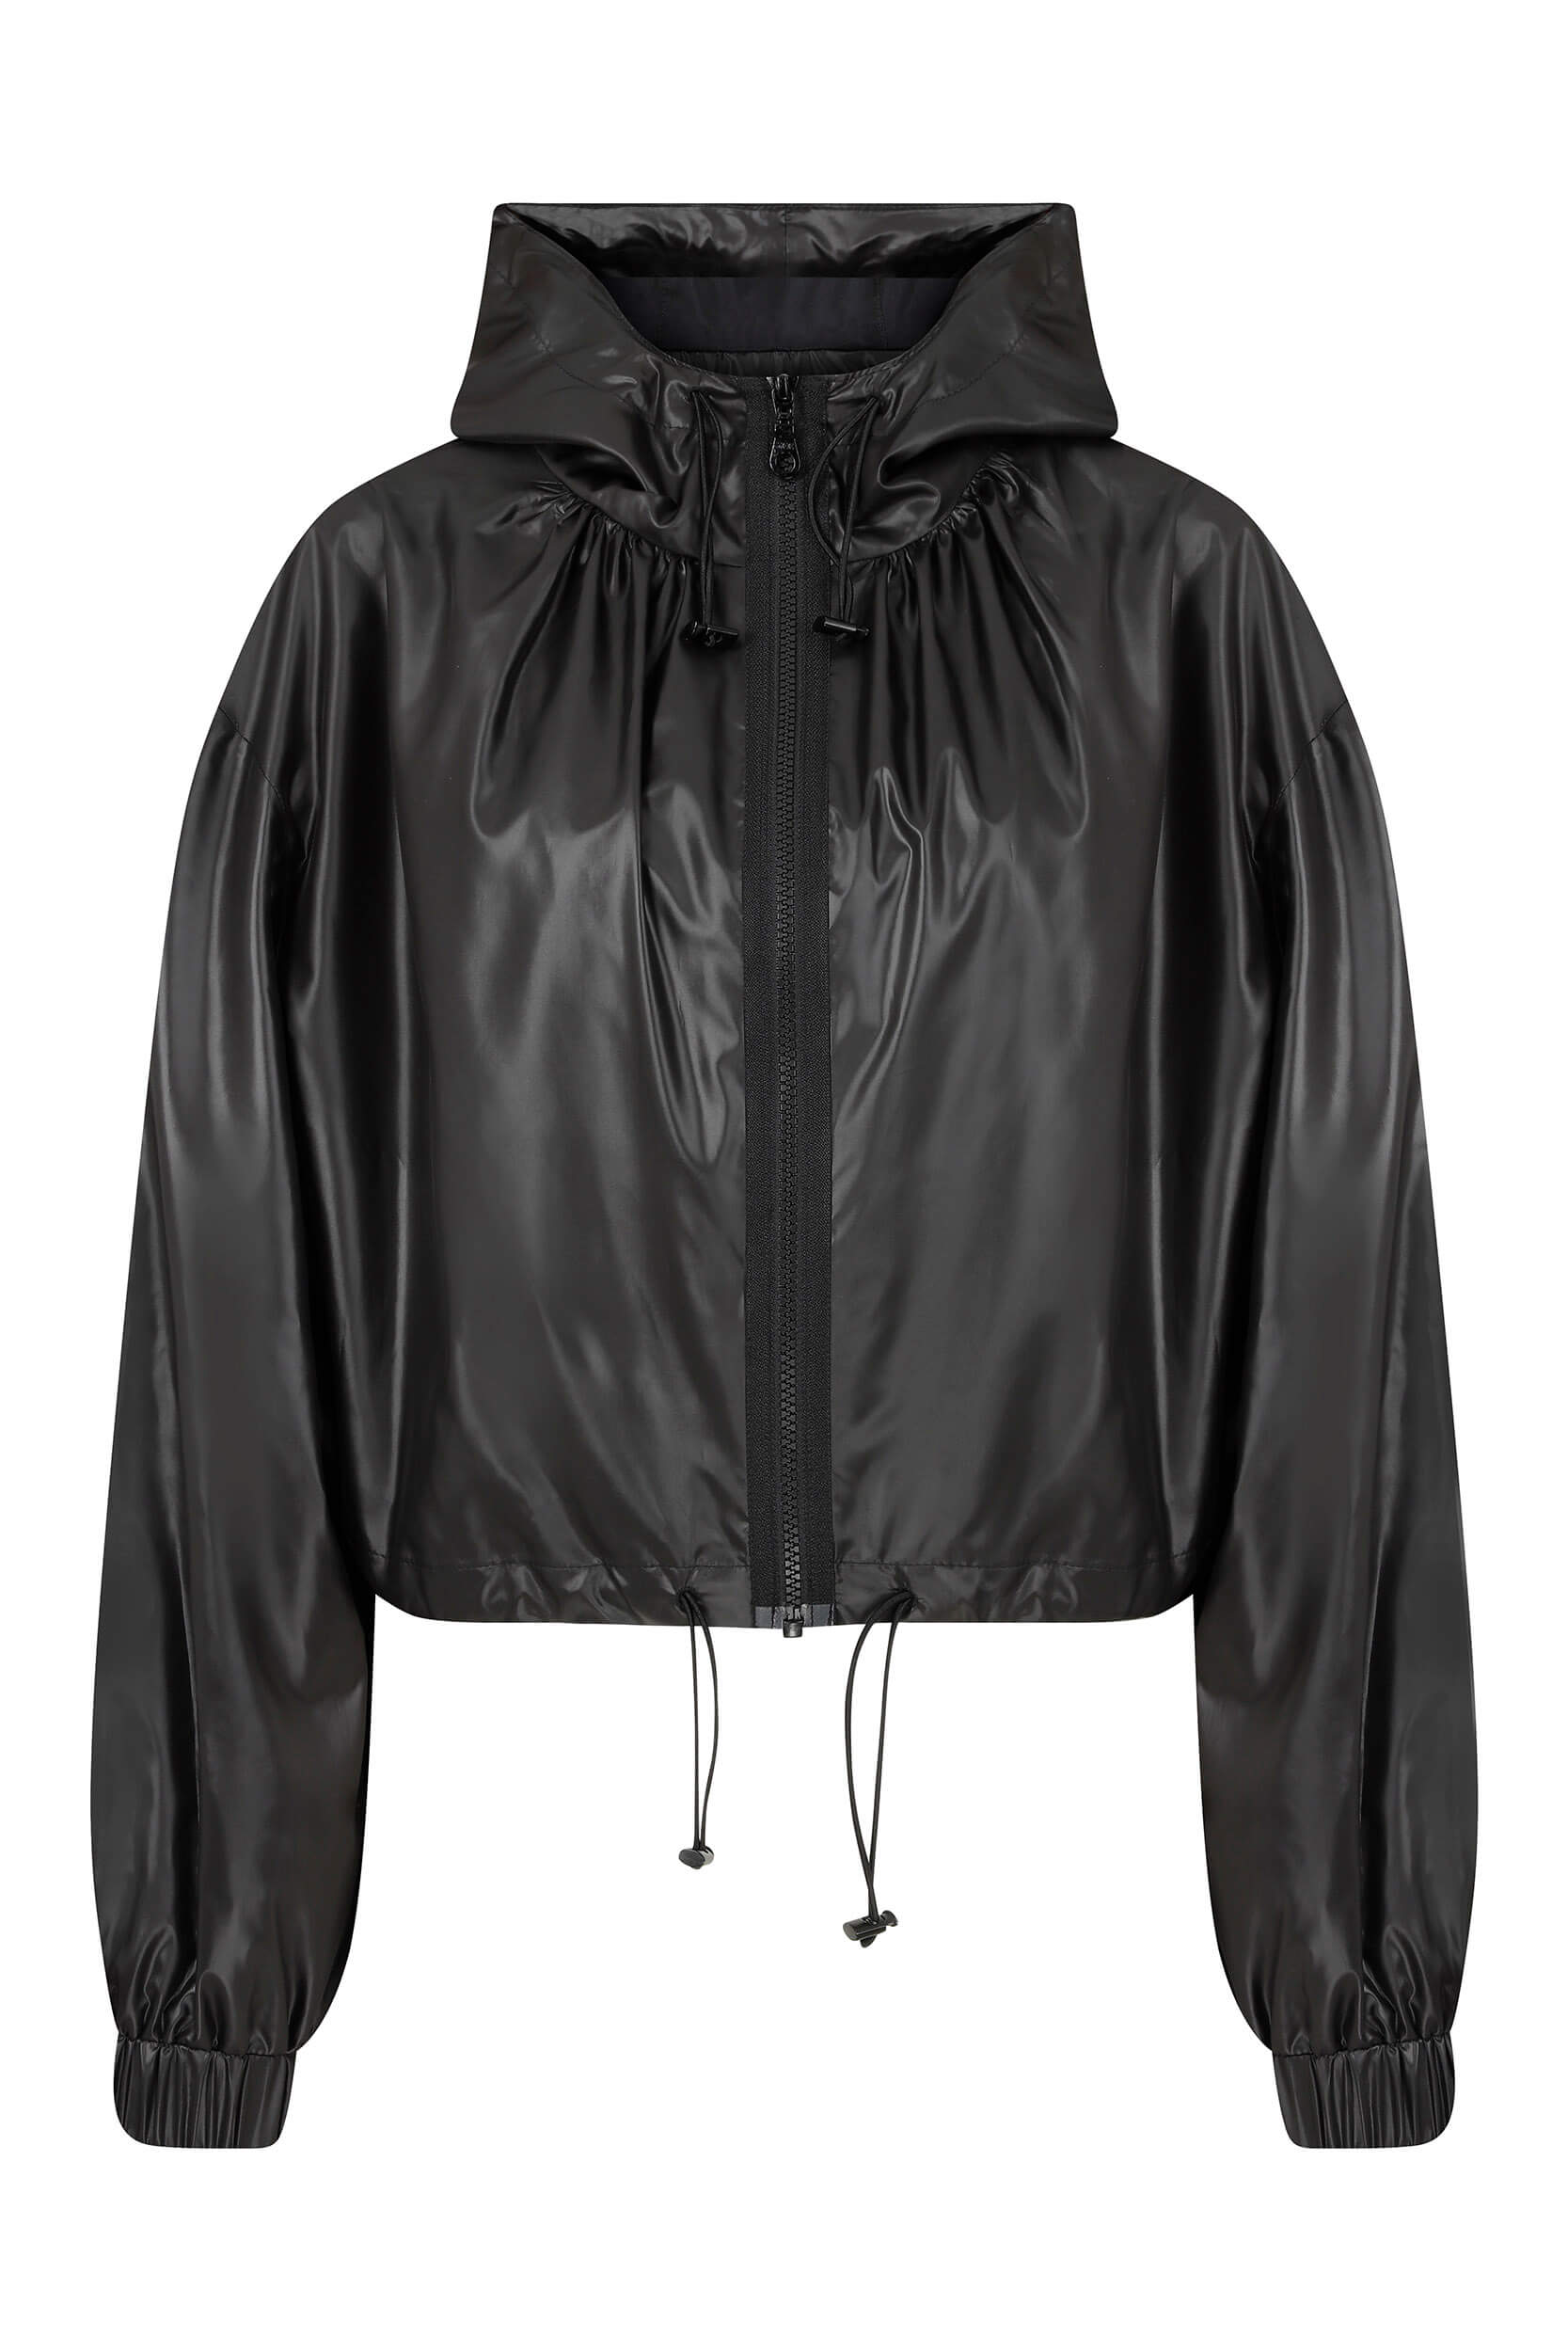 Roman Black Long Sleeve Jacket. 2